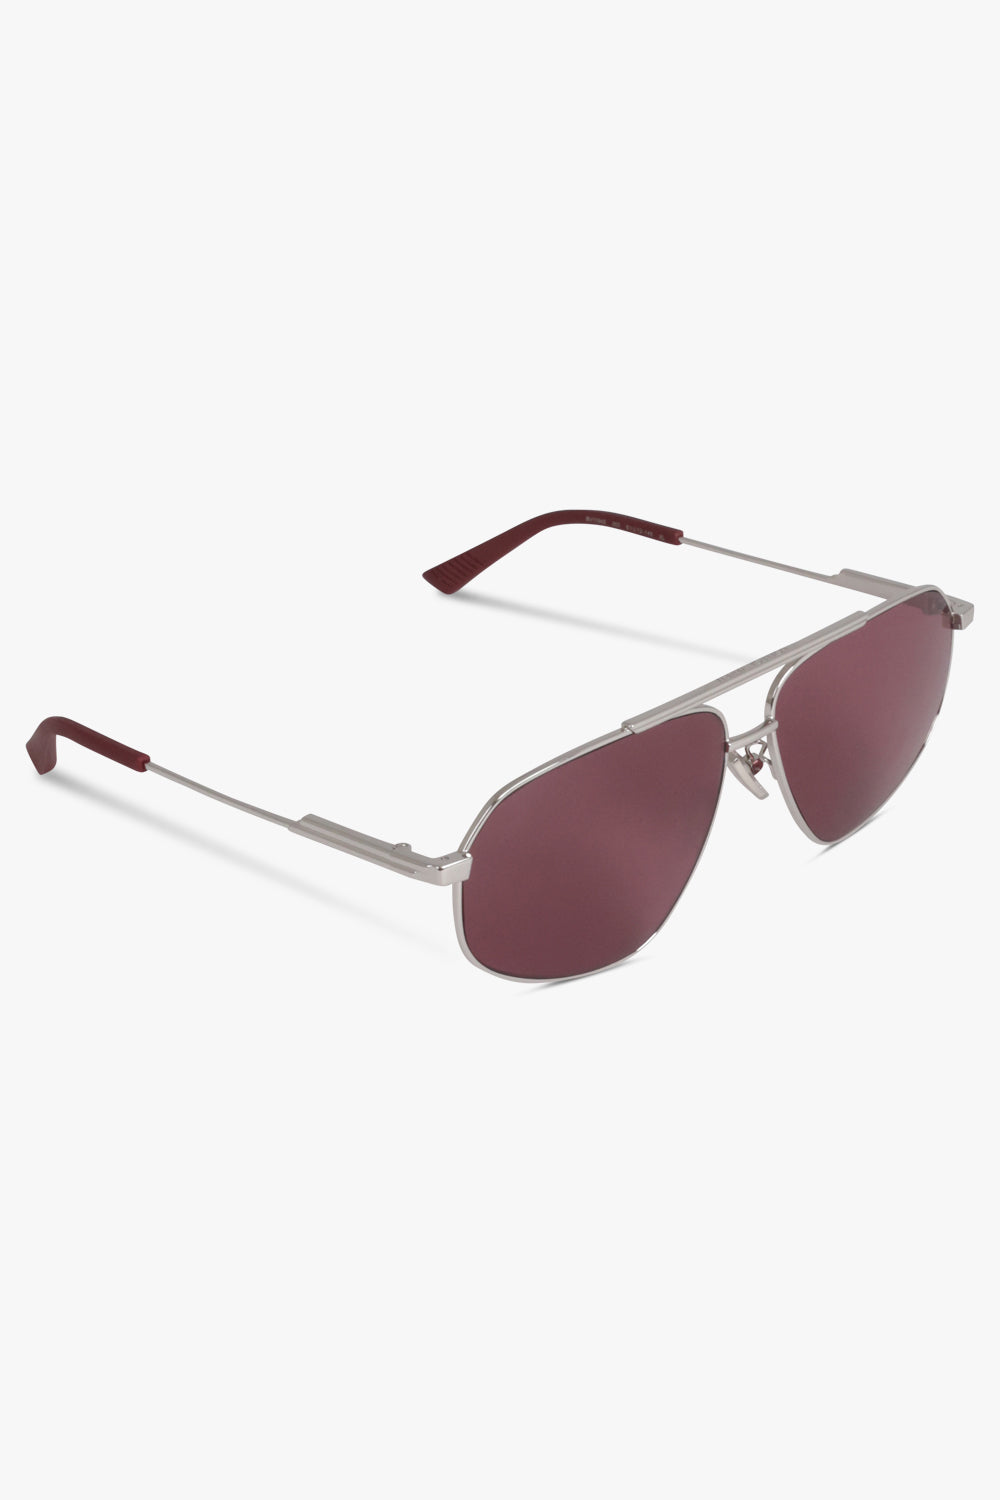 Bottega Veneta Silver Square Sunglasses